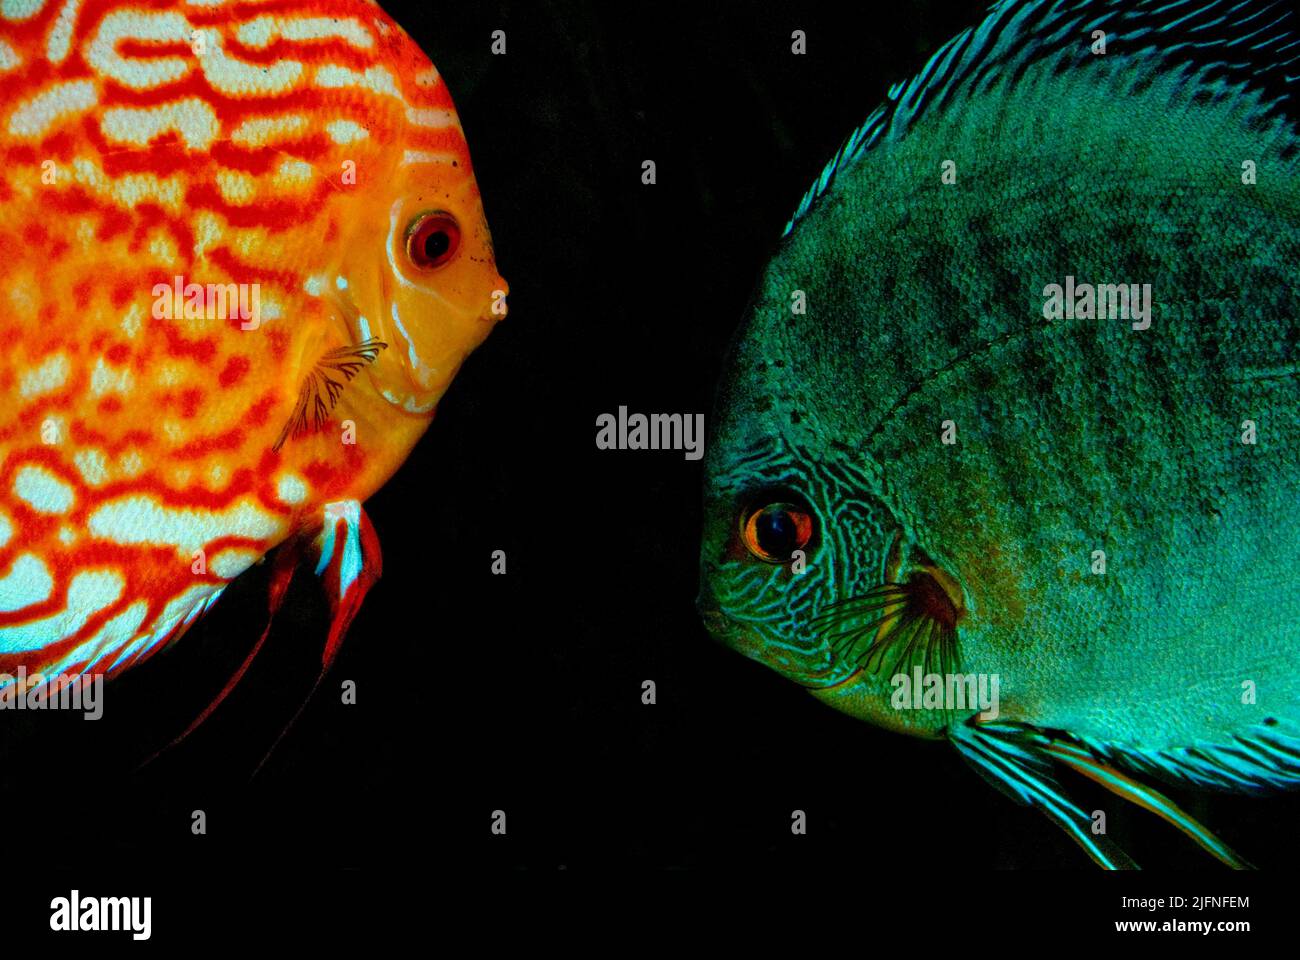 Discus fish (Symphysodon aequifasciatus). Stock Photo